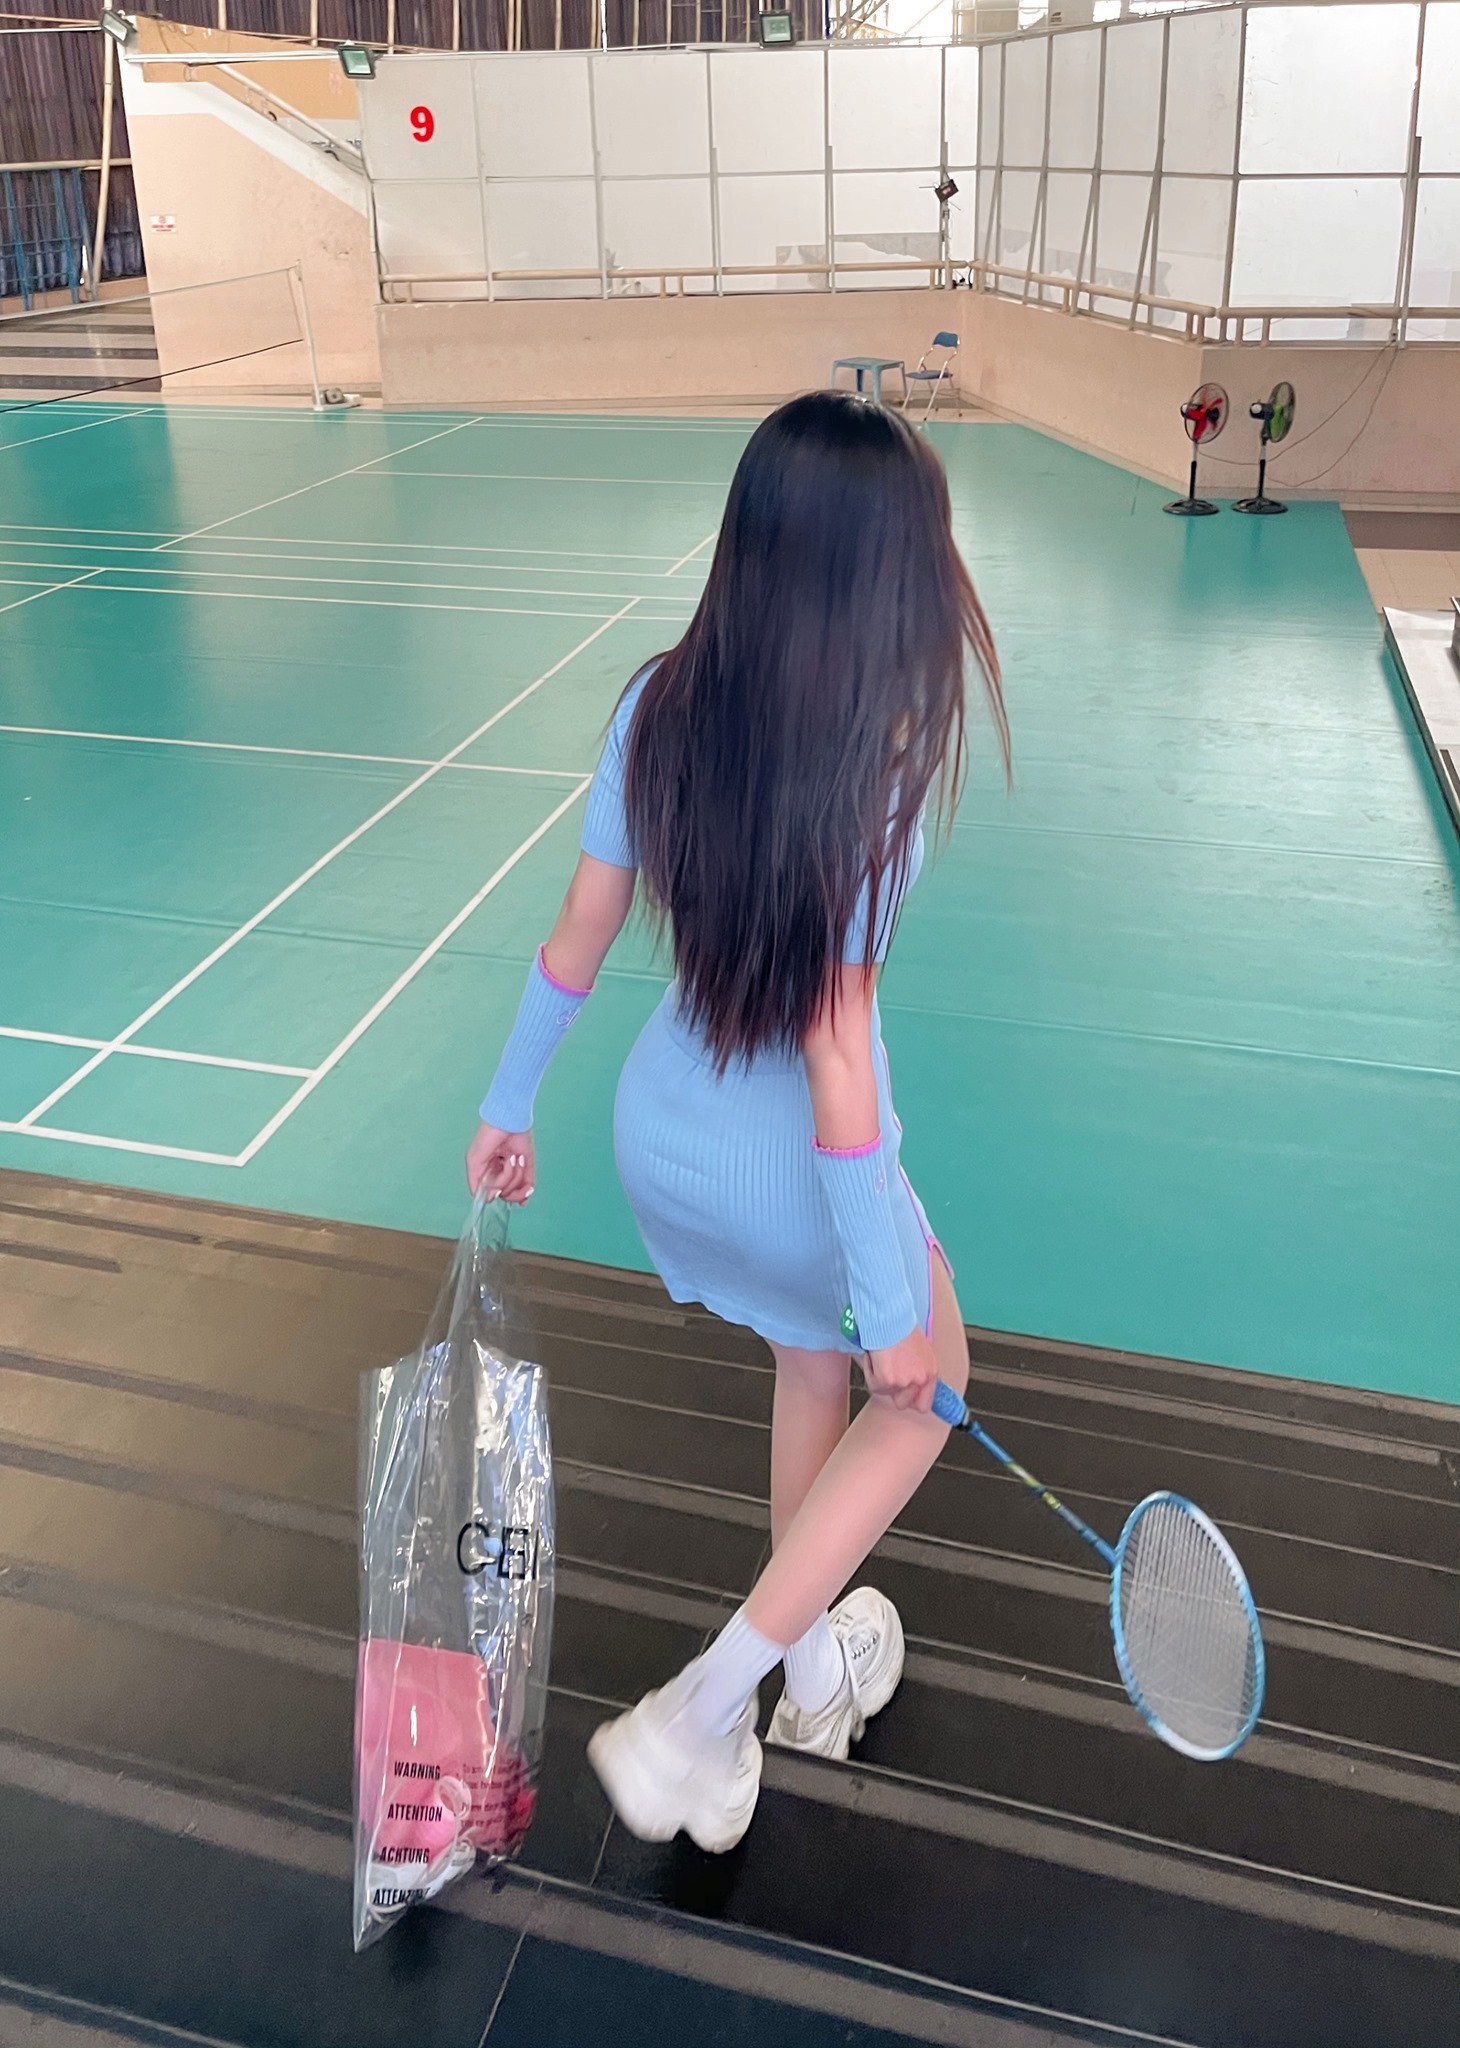 Mặc đồ bó sát chơi thể thao, nữ sinh Sài thành khoe body hoàn mỹ - Hình 10